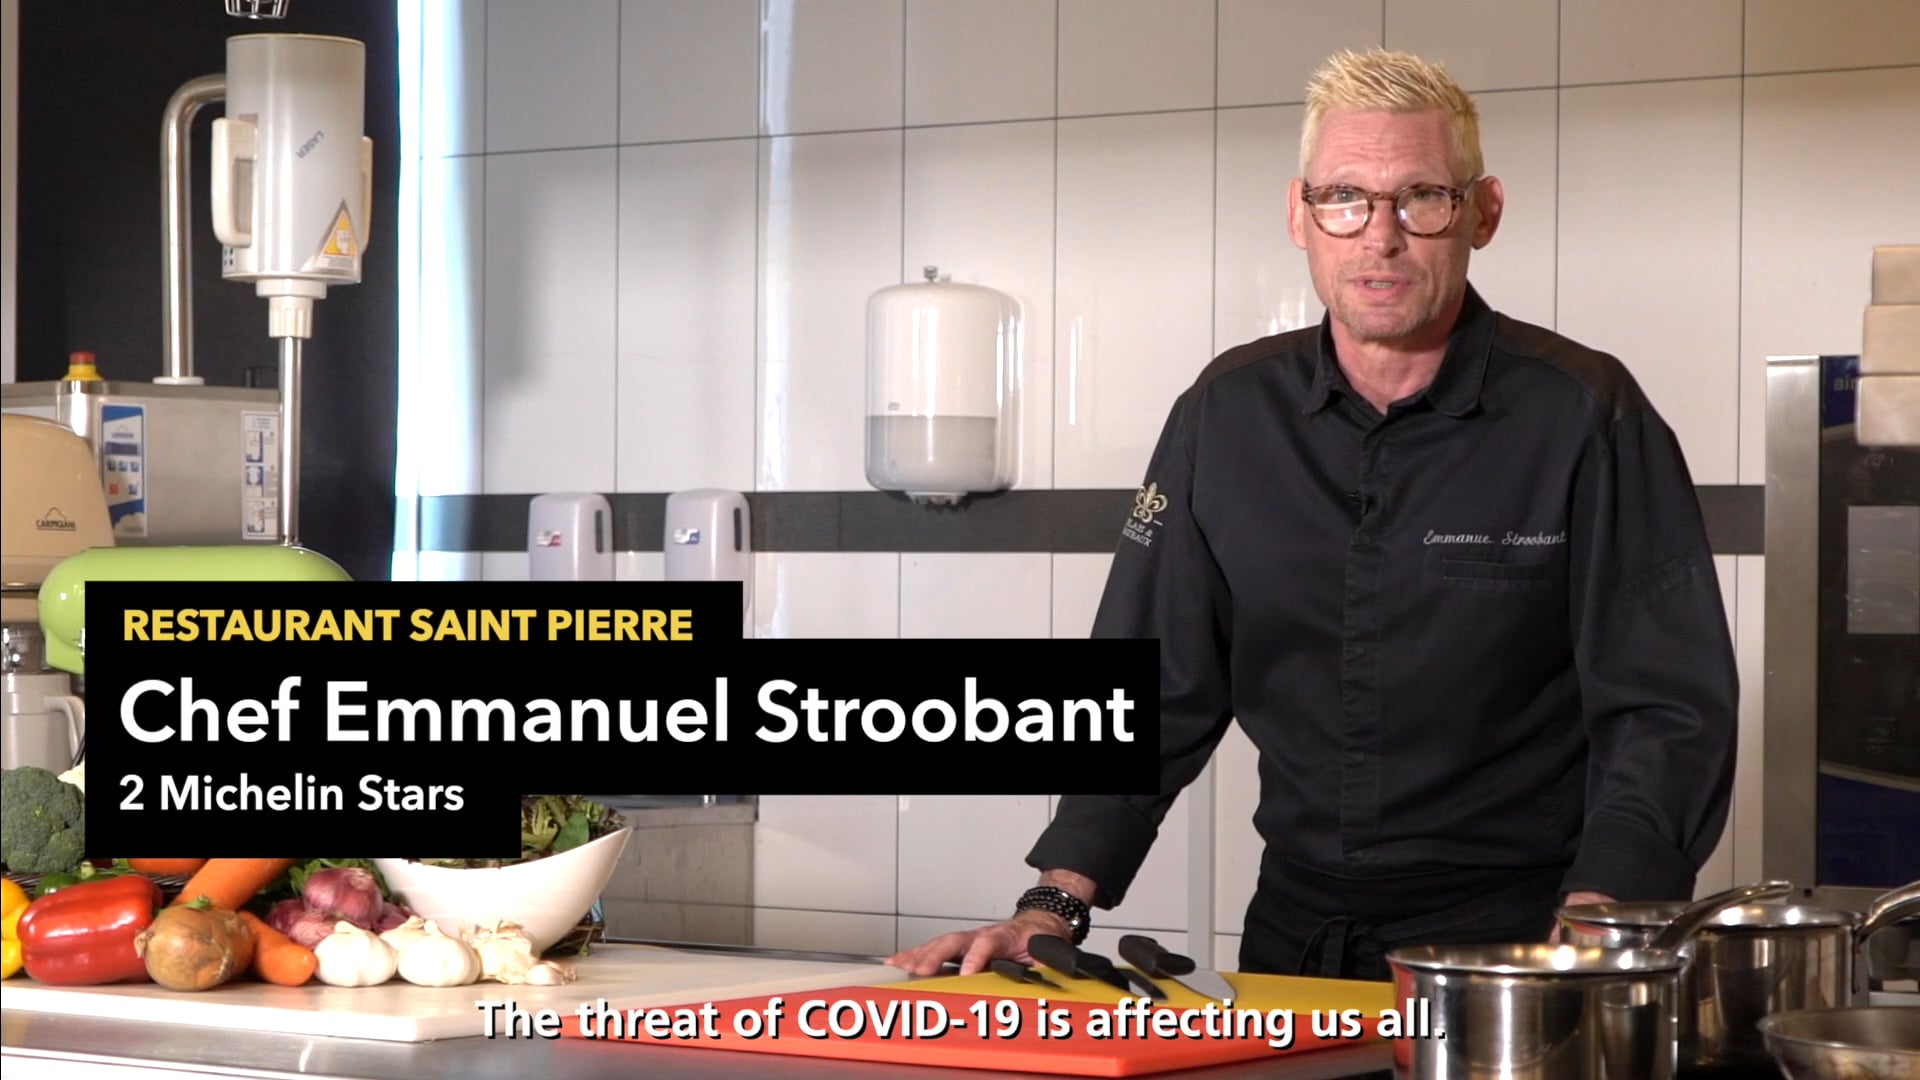 Chef Emmanuel Stroobant